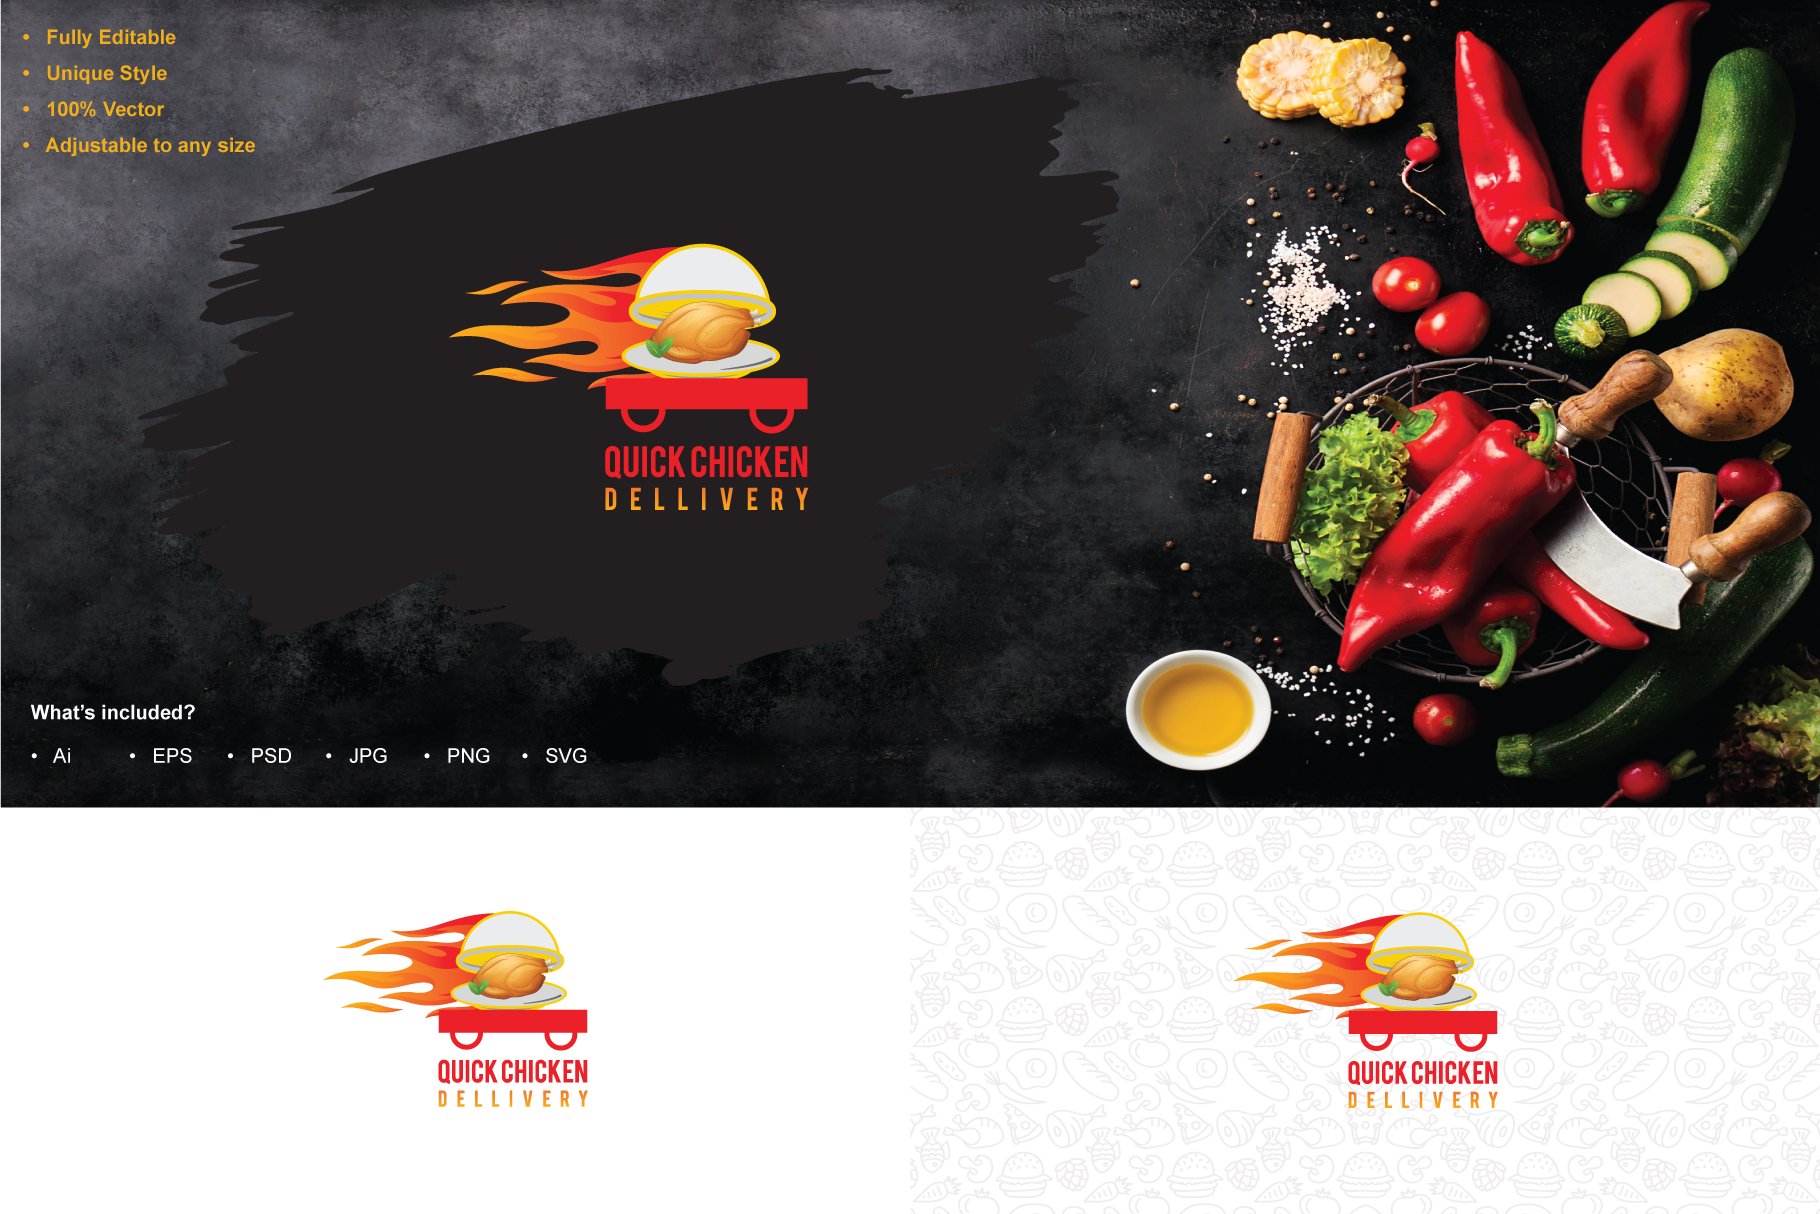 Quick Chicken Dellivery Logo cover image.